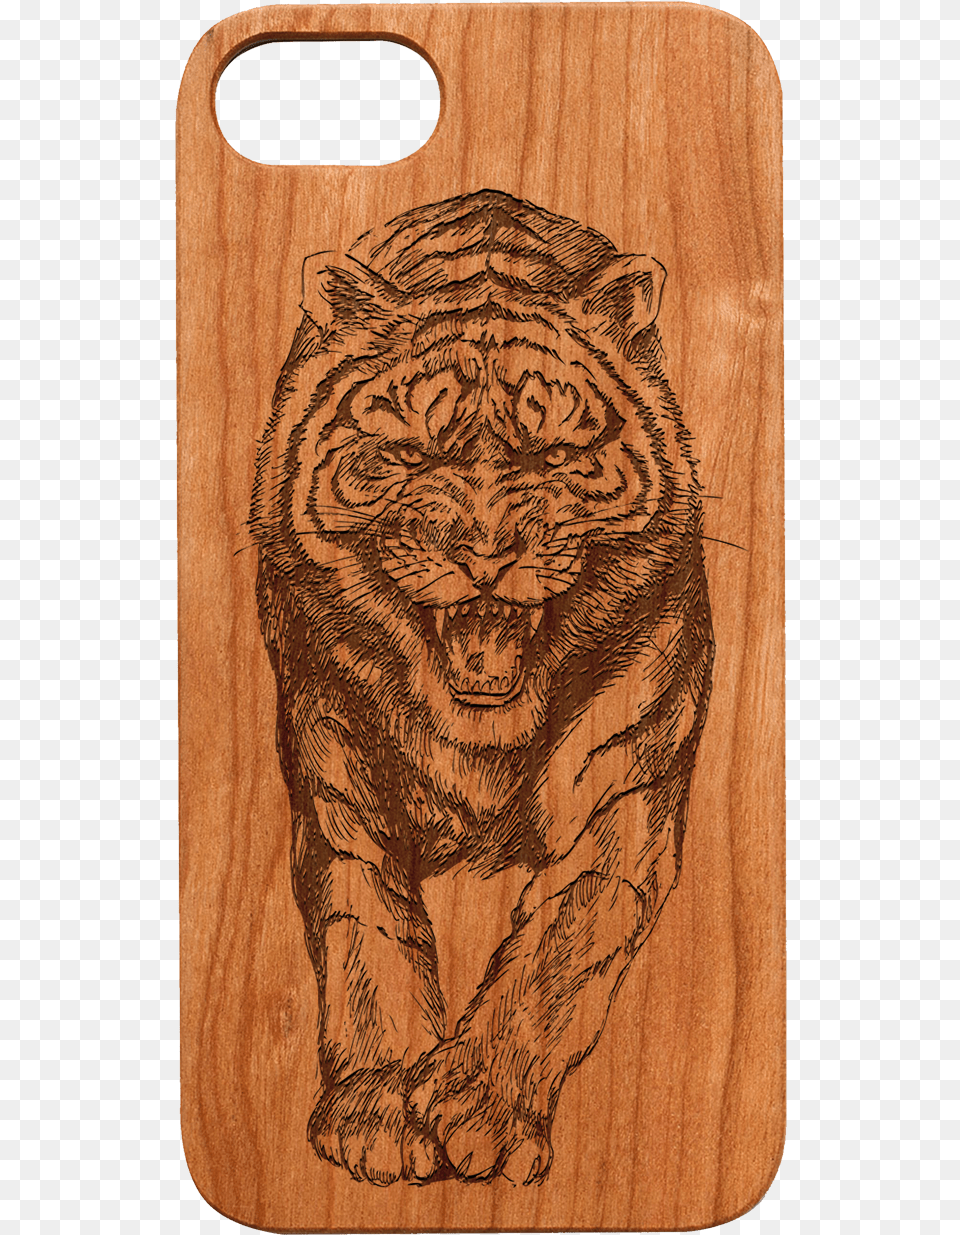 Wood Case Lion Engraved Wood, Animal, Mammal, Tiger, Wildlife Png Image